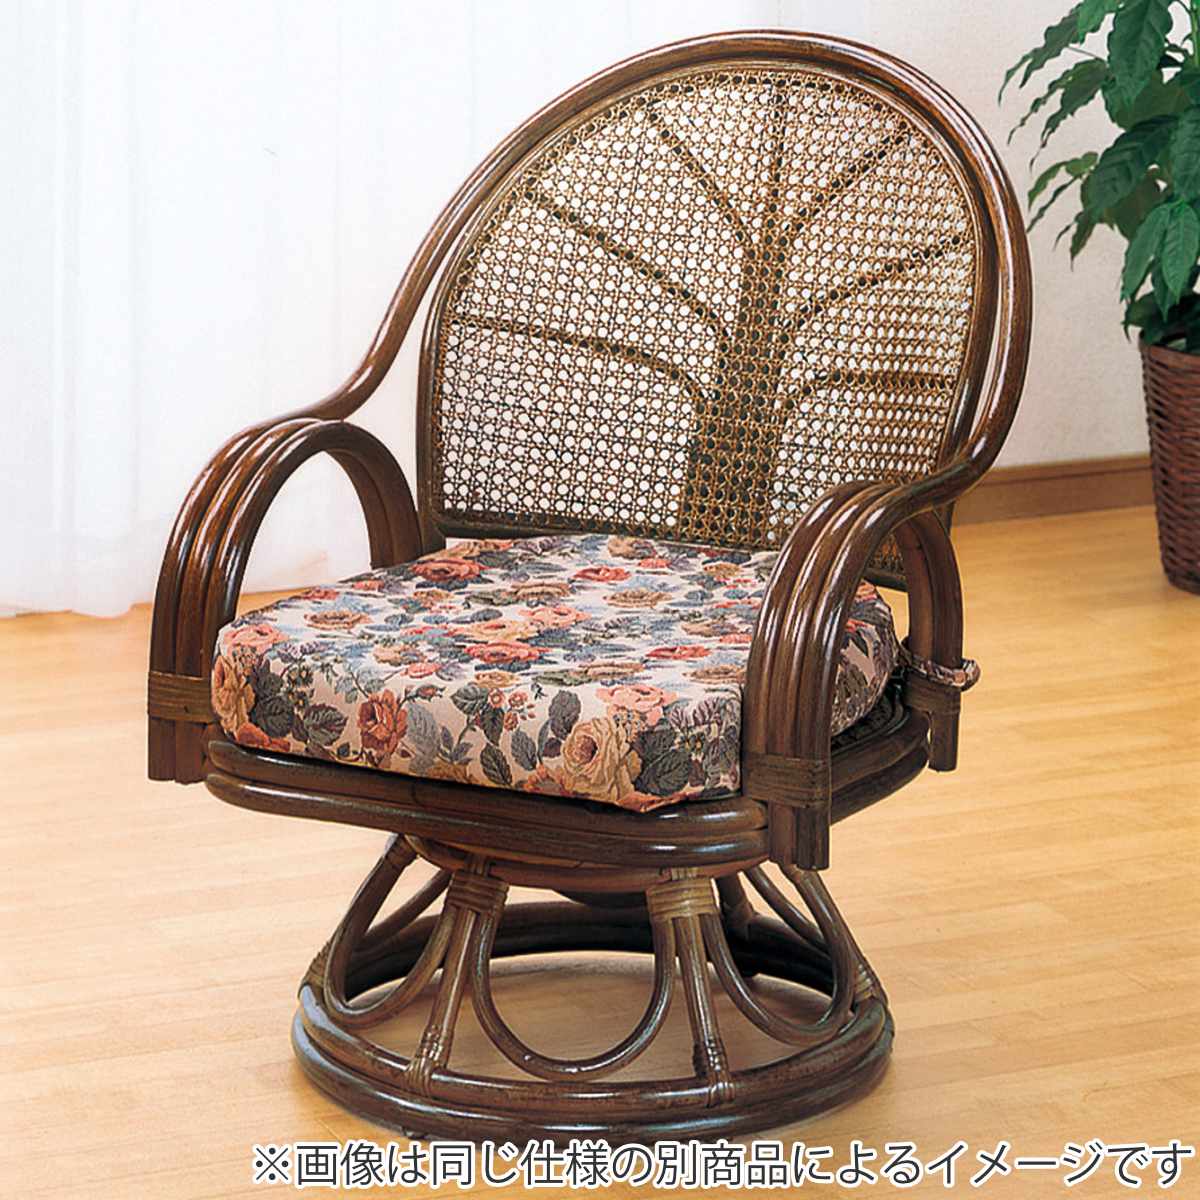 8,036円おしゃれ【希少円形ラタンチェア】【回転します】 籐 チェア 回転椅子 アジアン